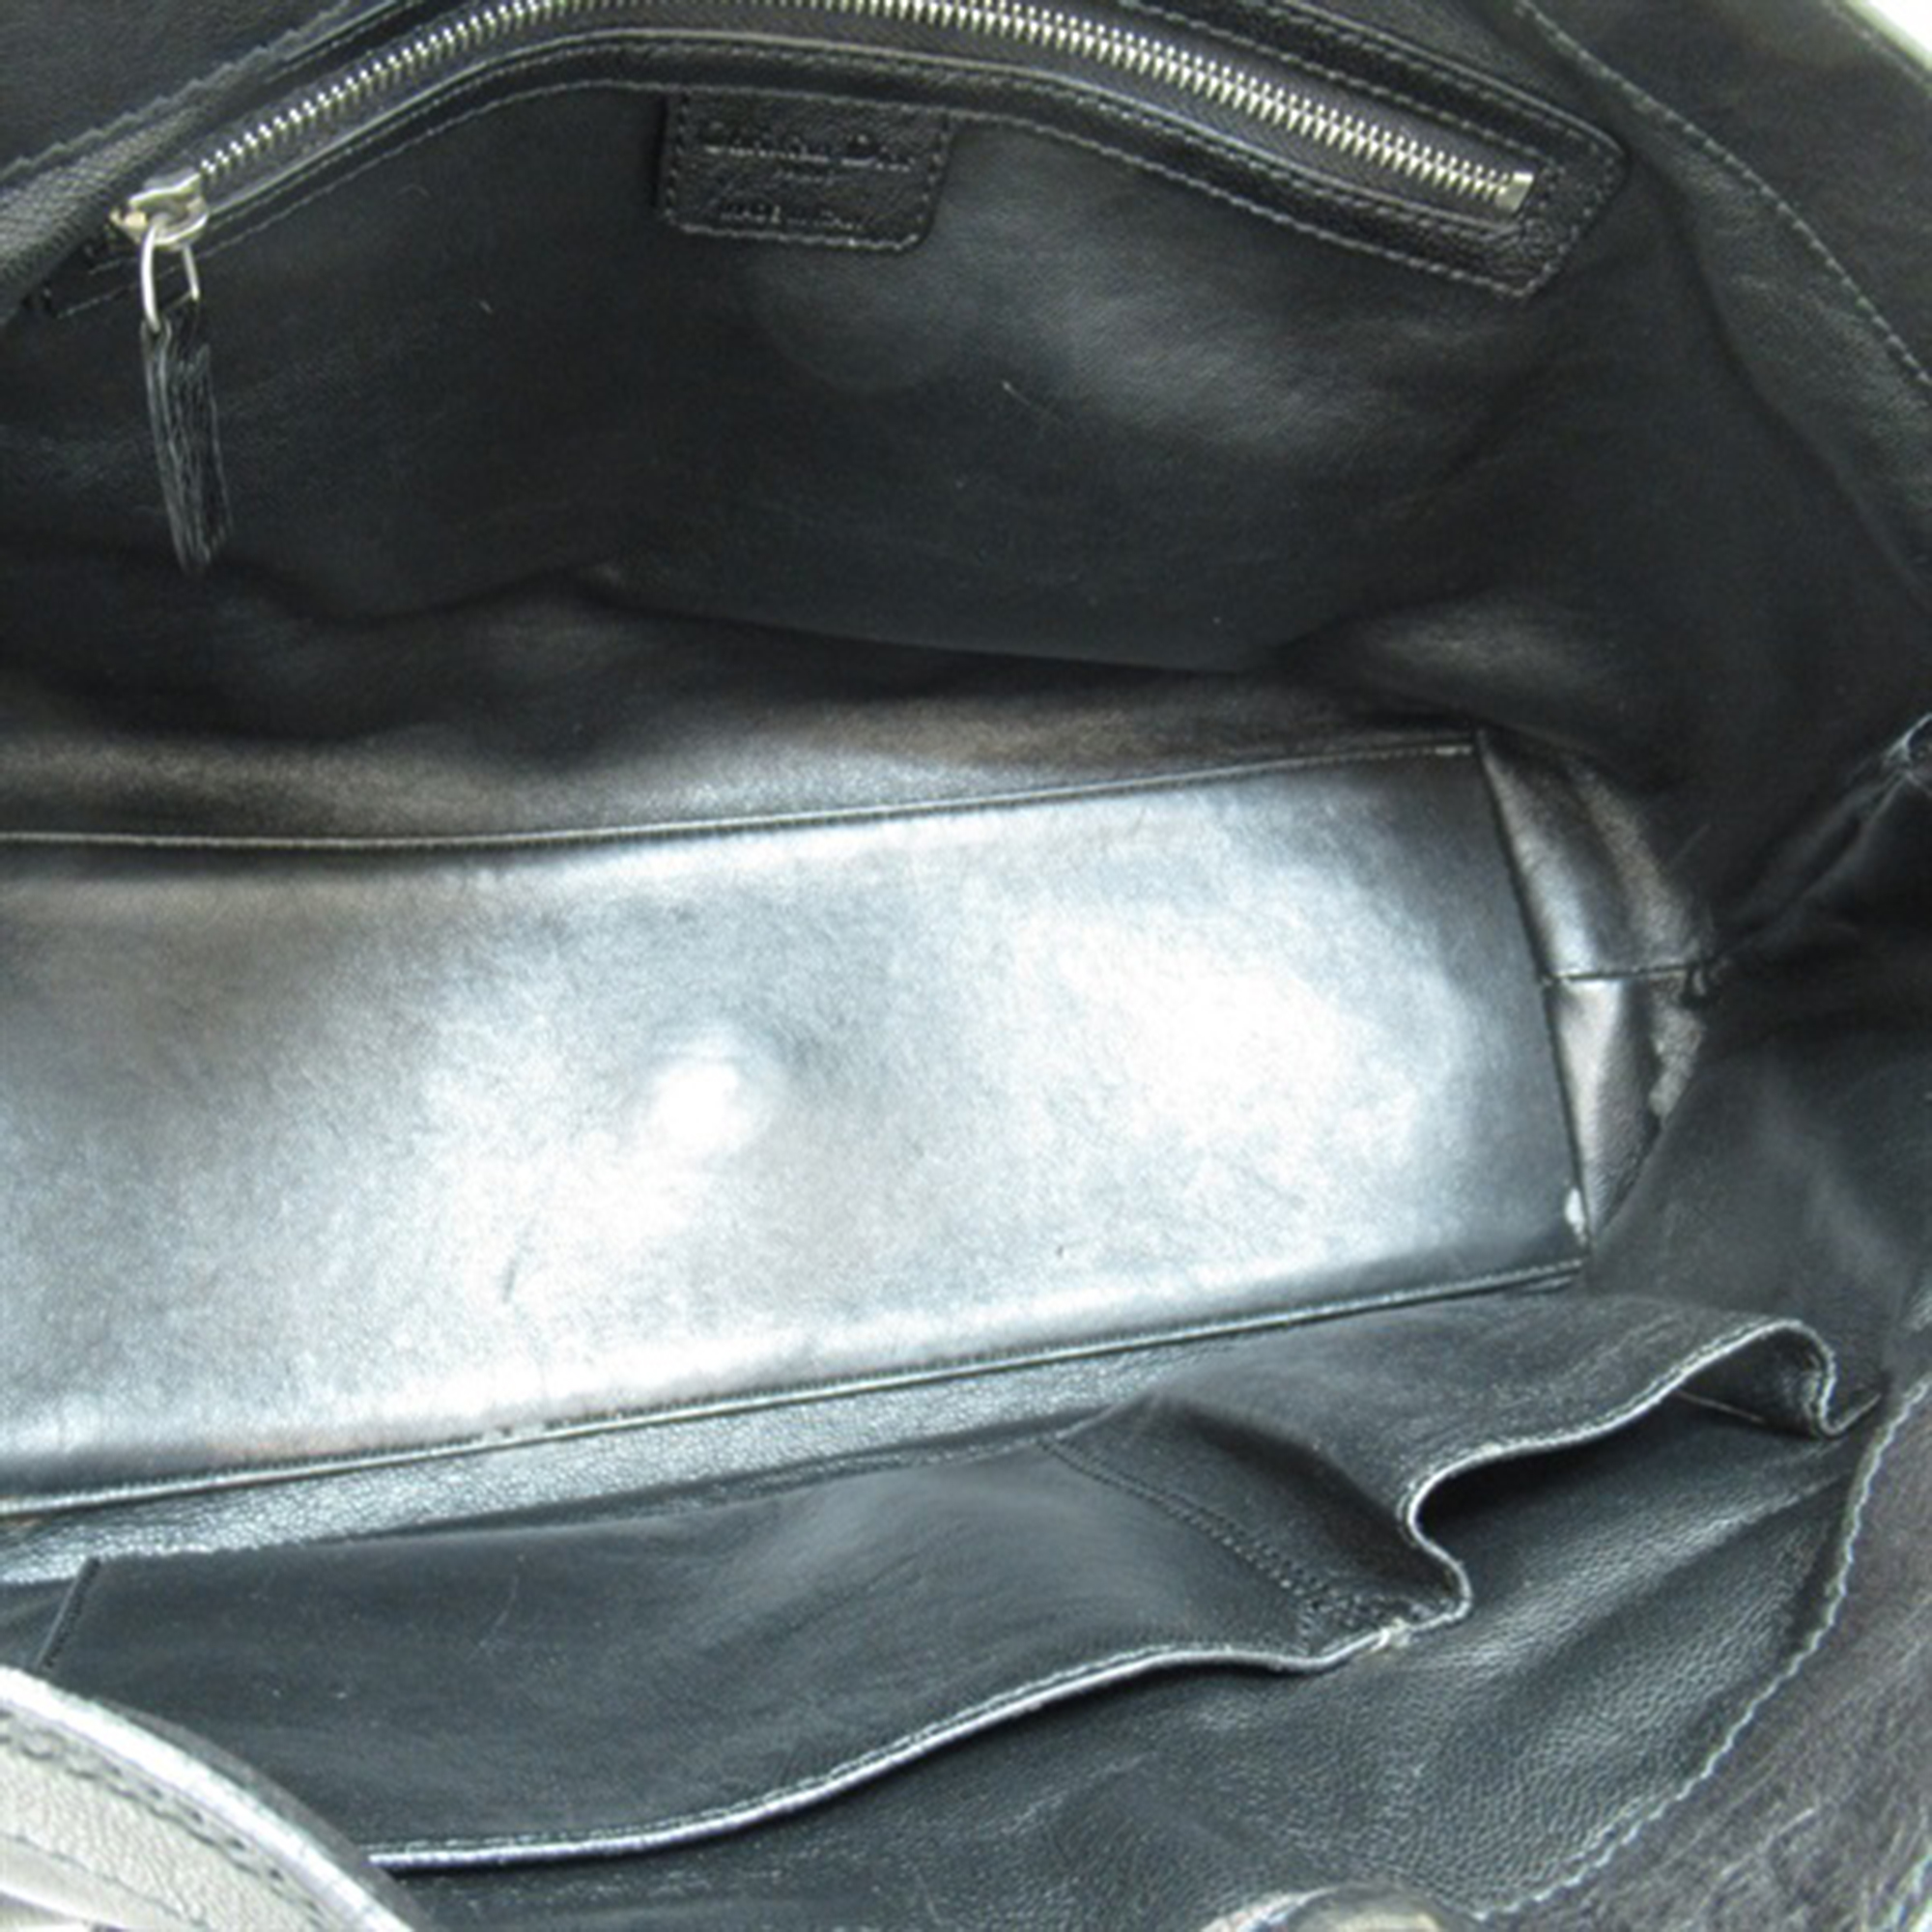 Dior Black Leather Pocket Tote Bag